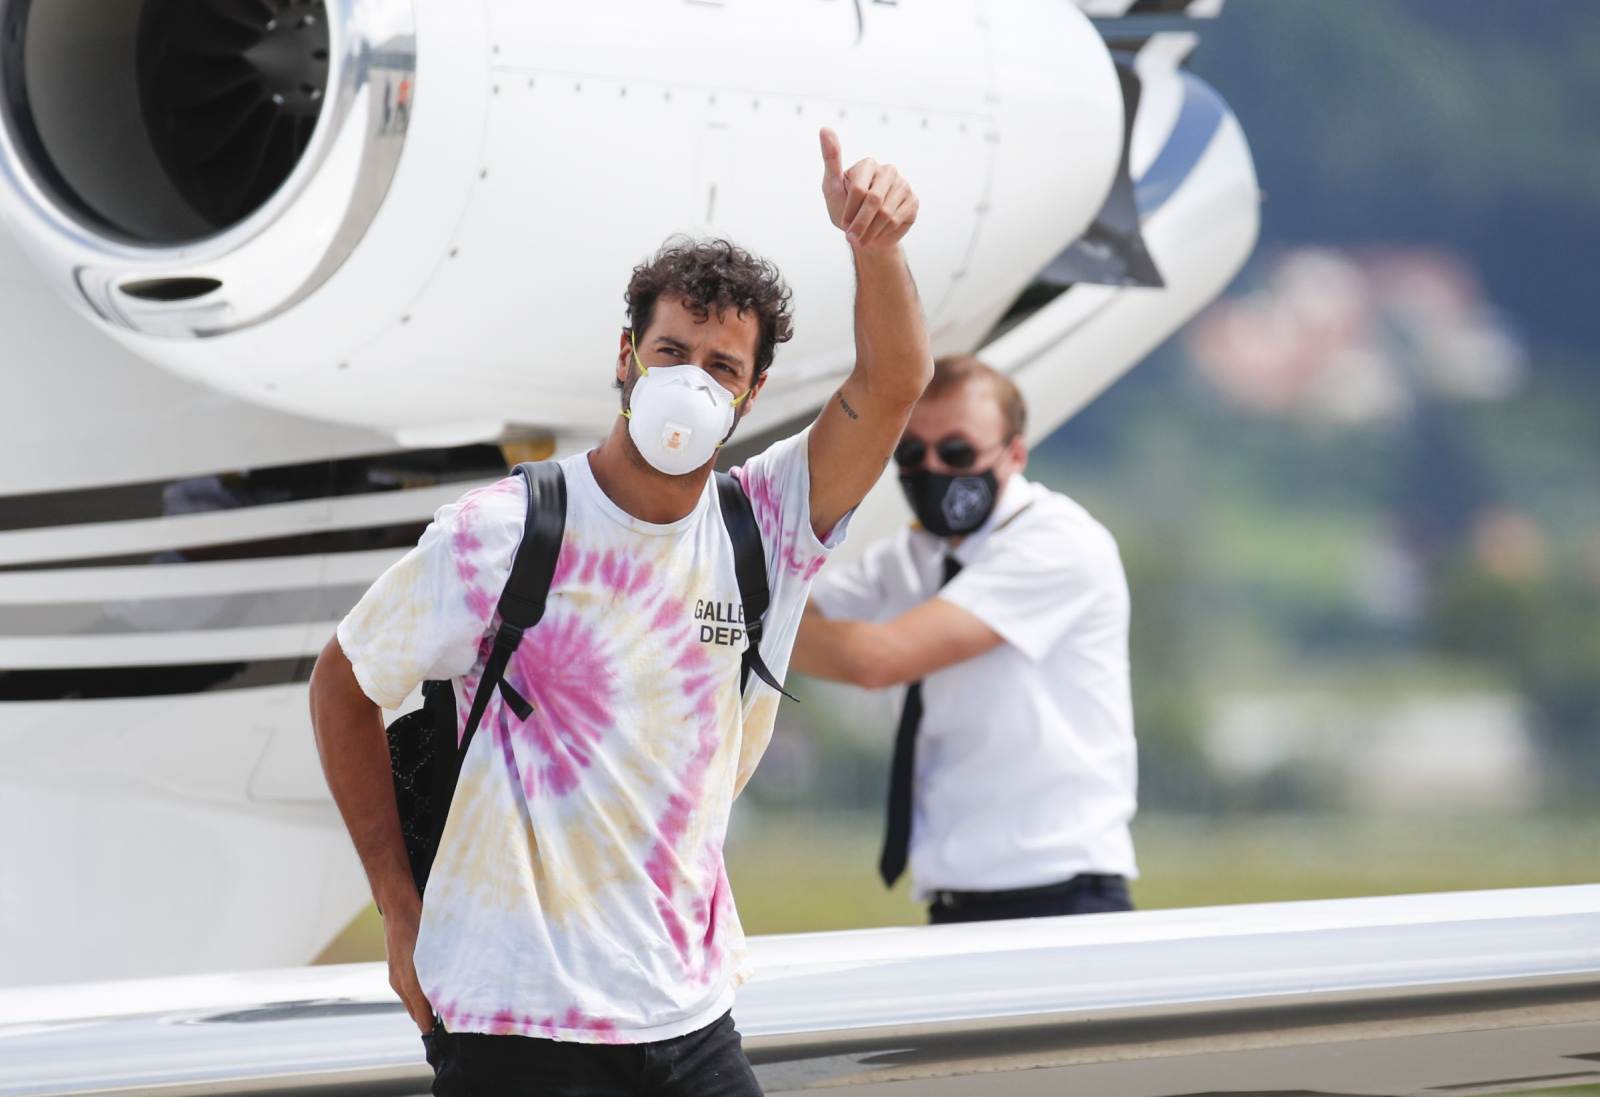 Daniel Ricciardo desembarca na Áustria usando uma camiseta bem maneira